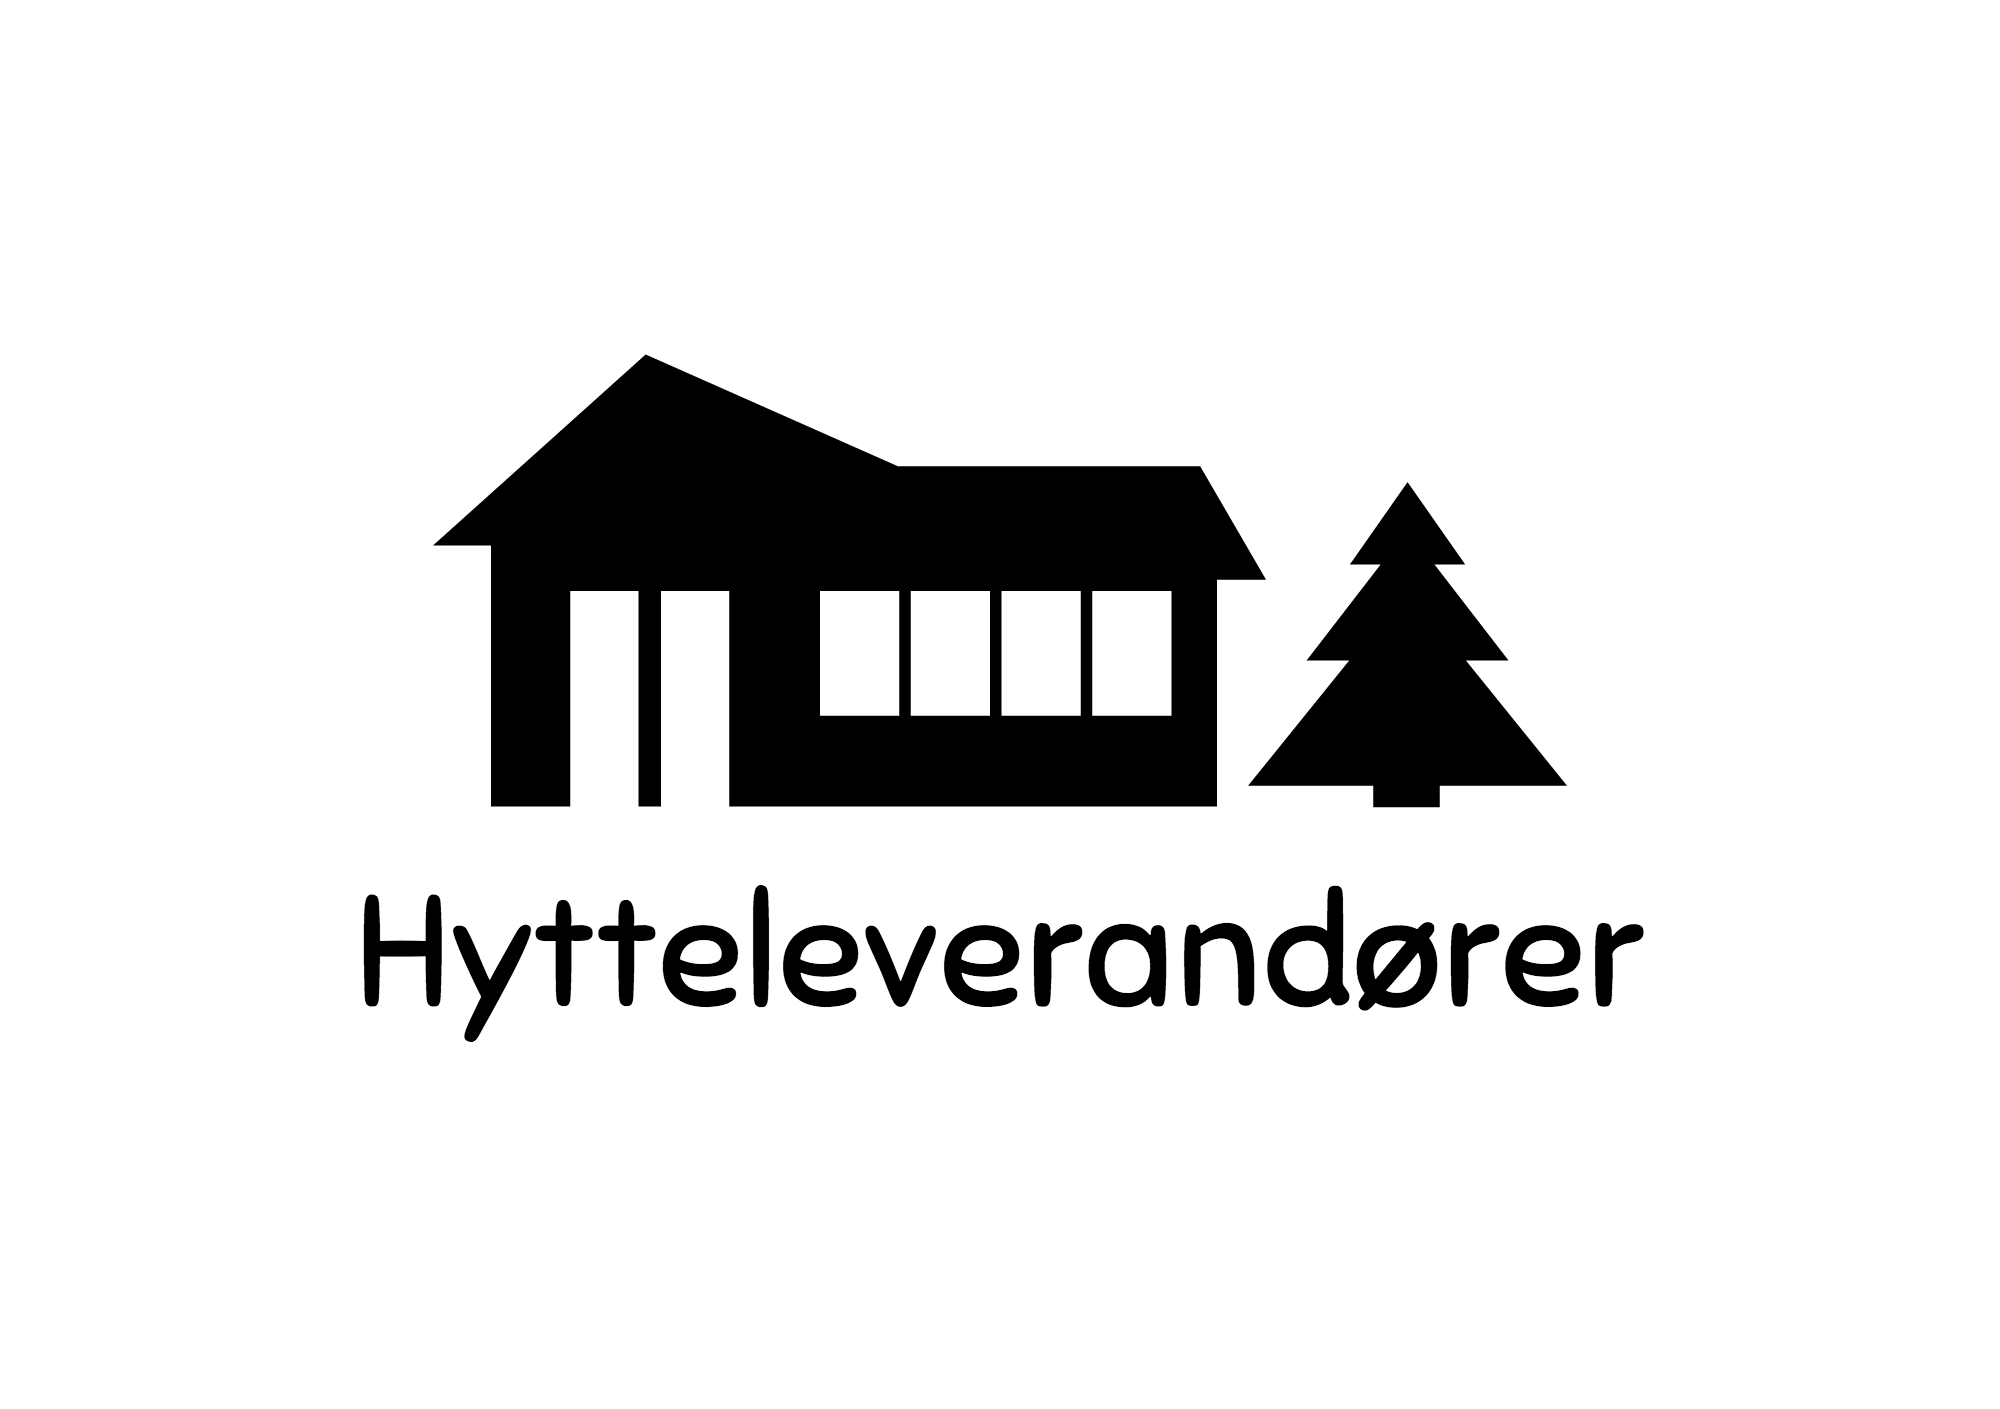 Hytteleverandører-logo-black.png